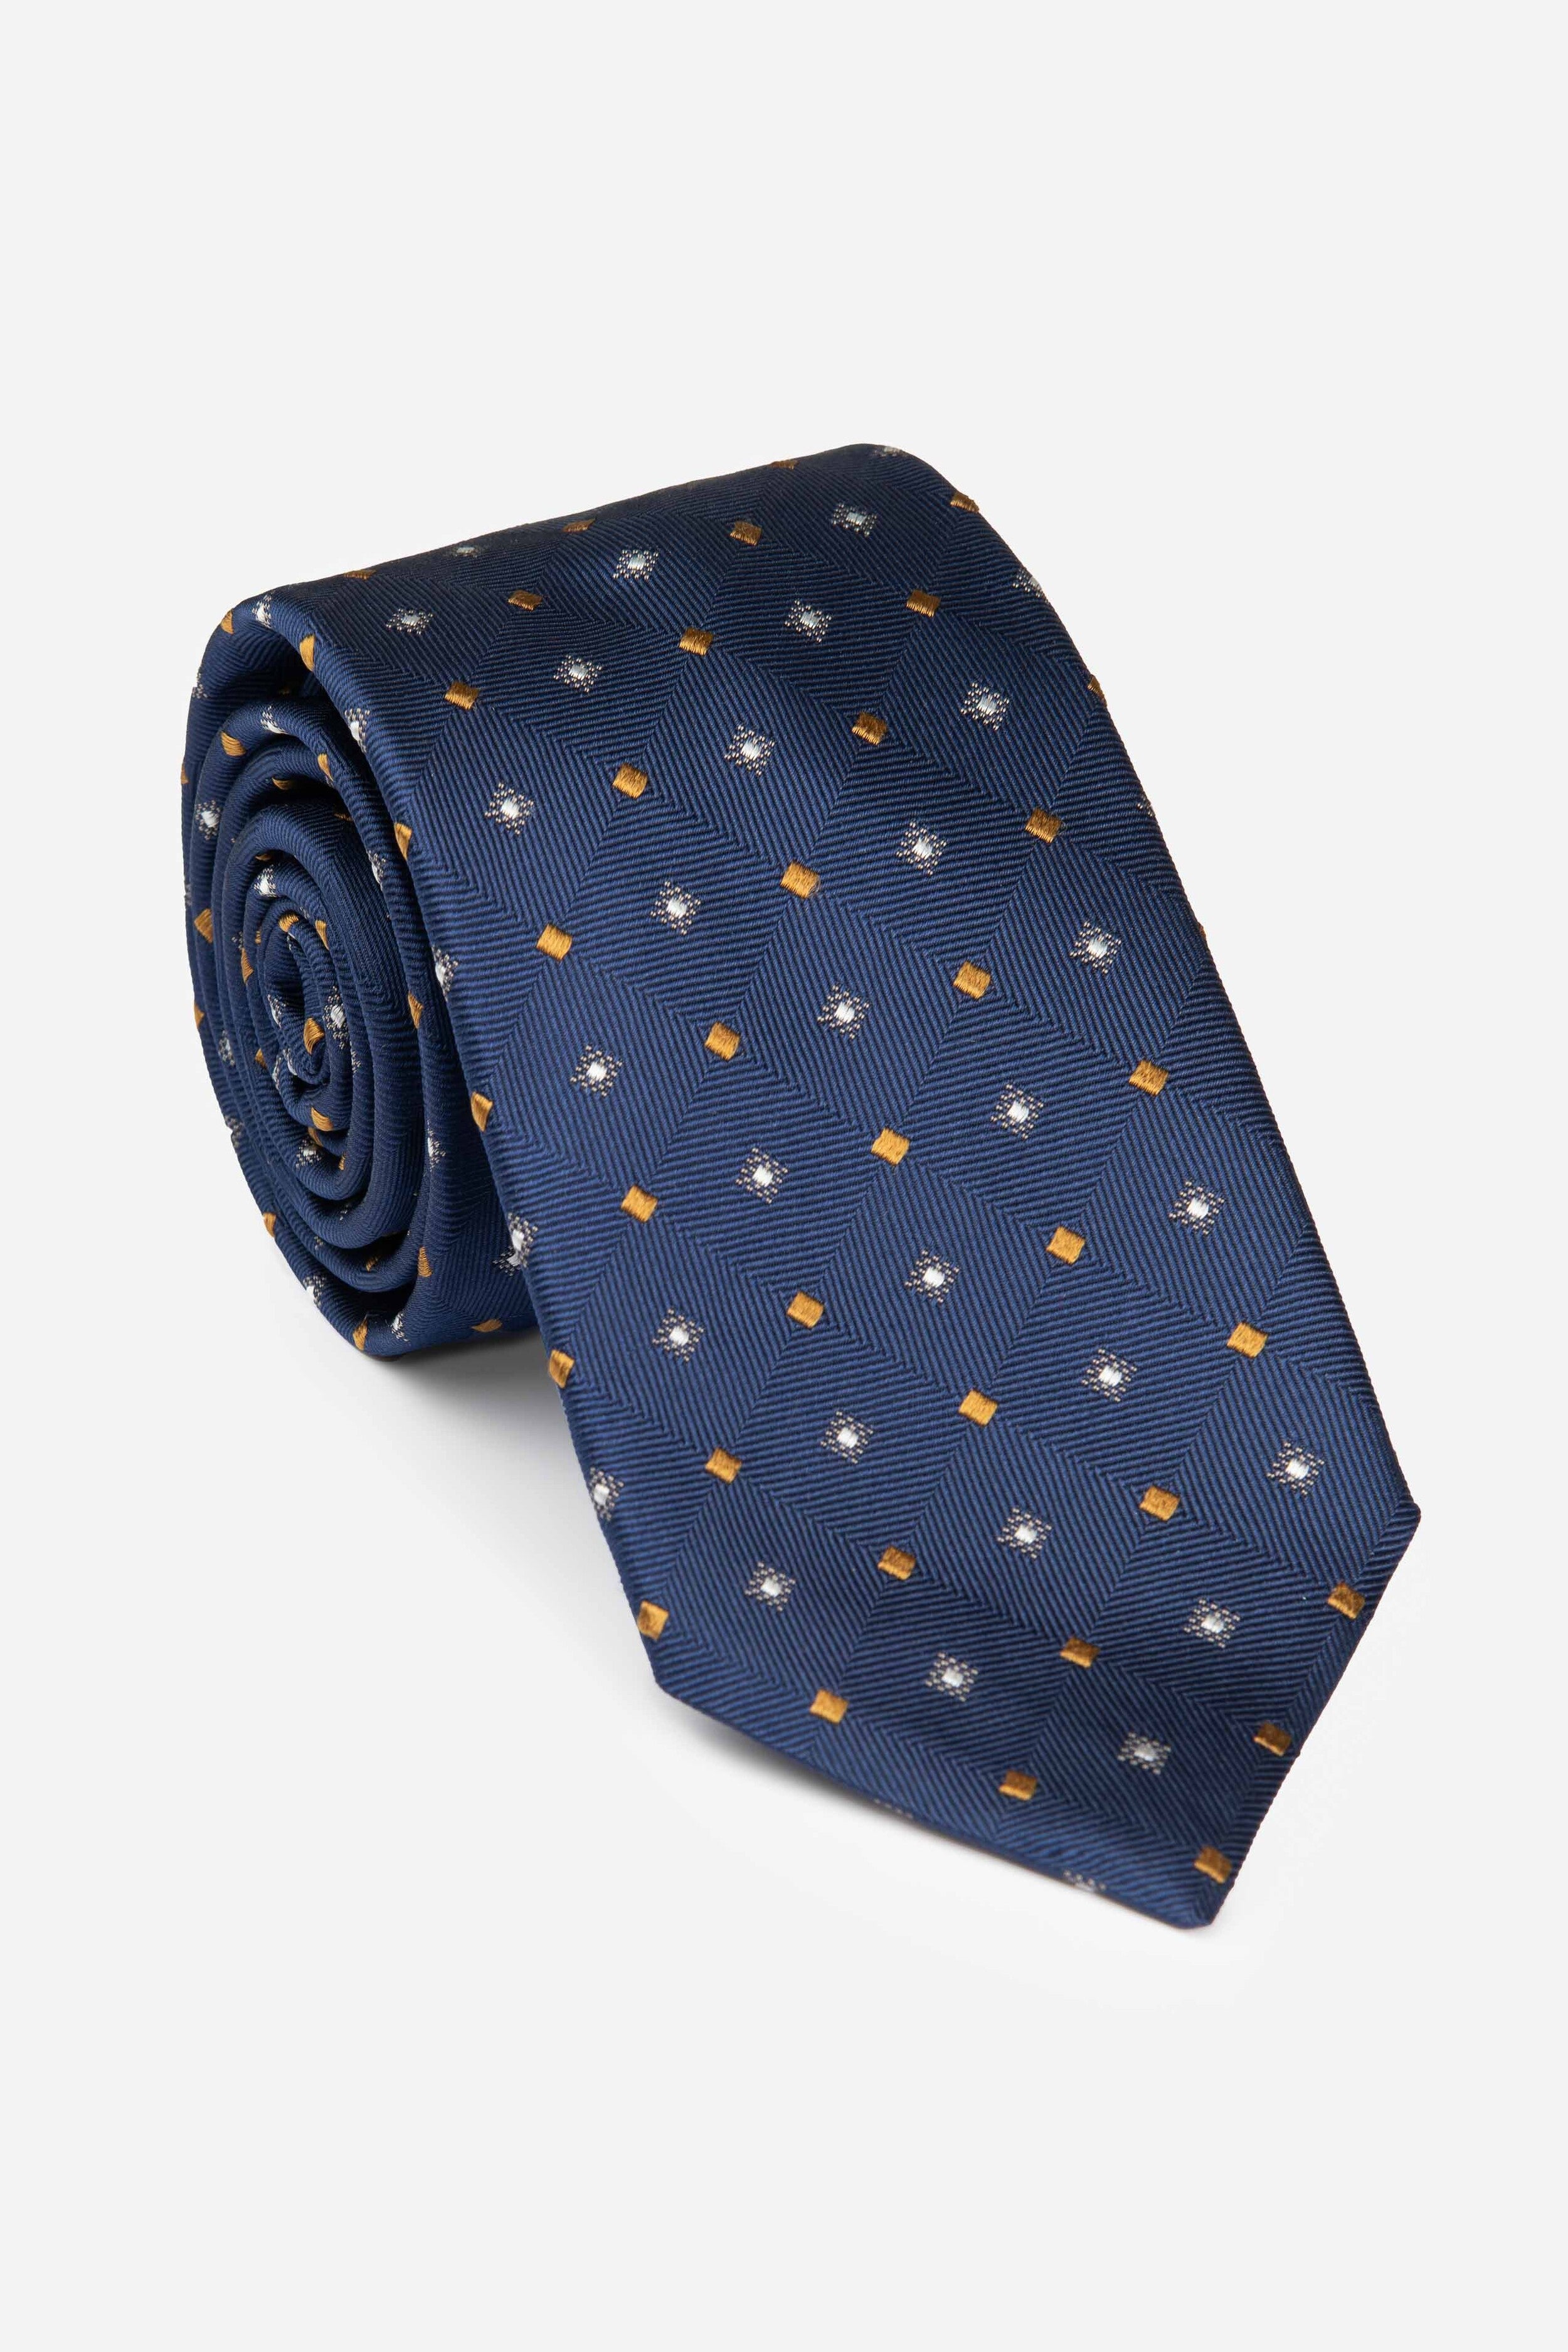 Plaid patterned tie - Bluette check